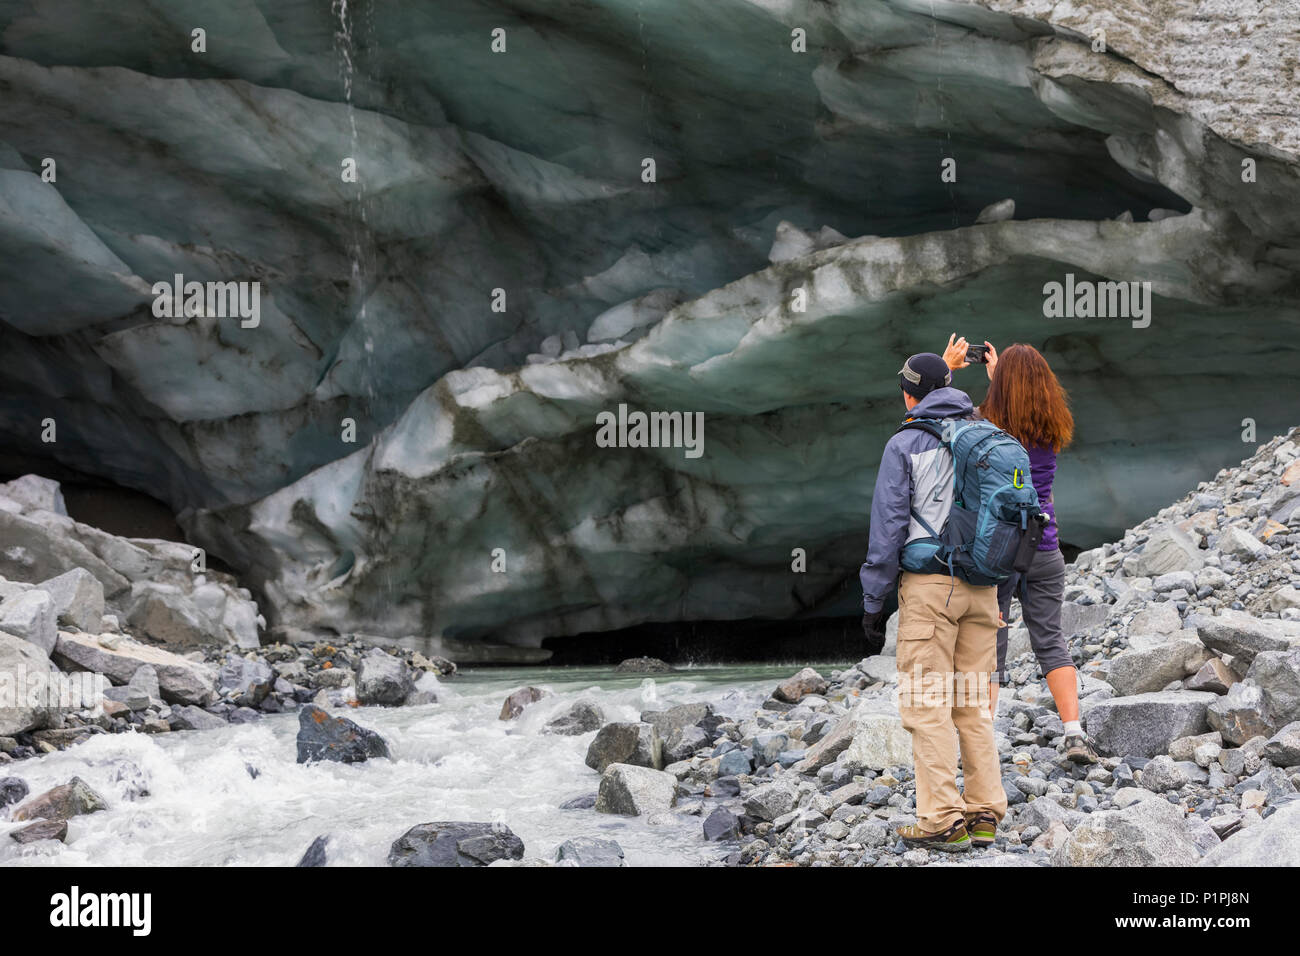 Una donna prende una fotografia di una caverna di ghiaccio con il suo telefono cellulare durante le escursioni al ghiacciaio Gulkana con suo marito; Alaska, Stati Uniti d'America Foto Stock